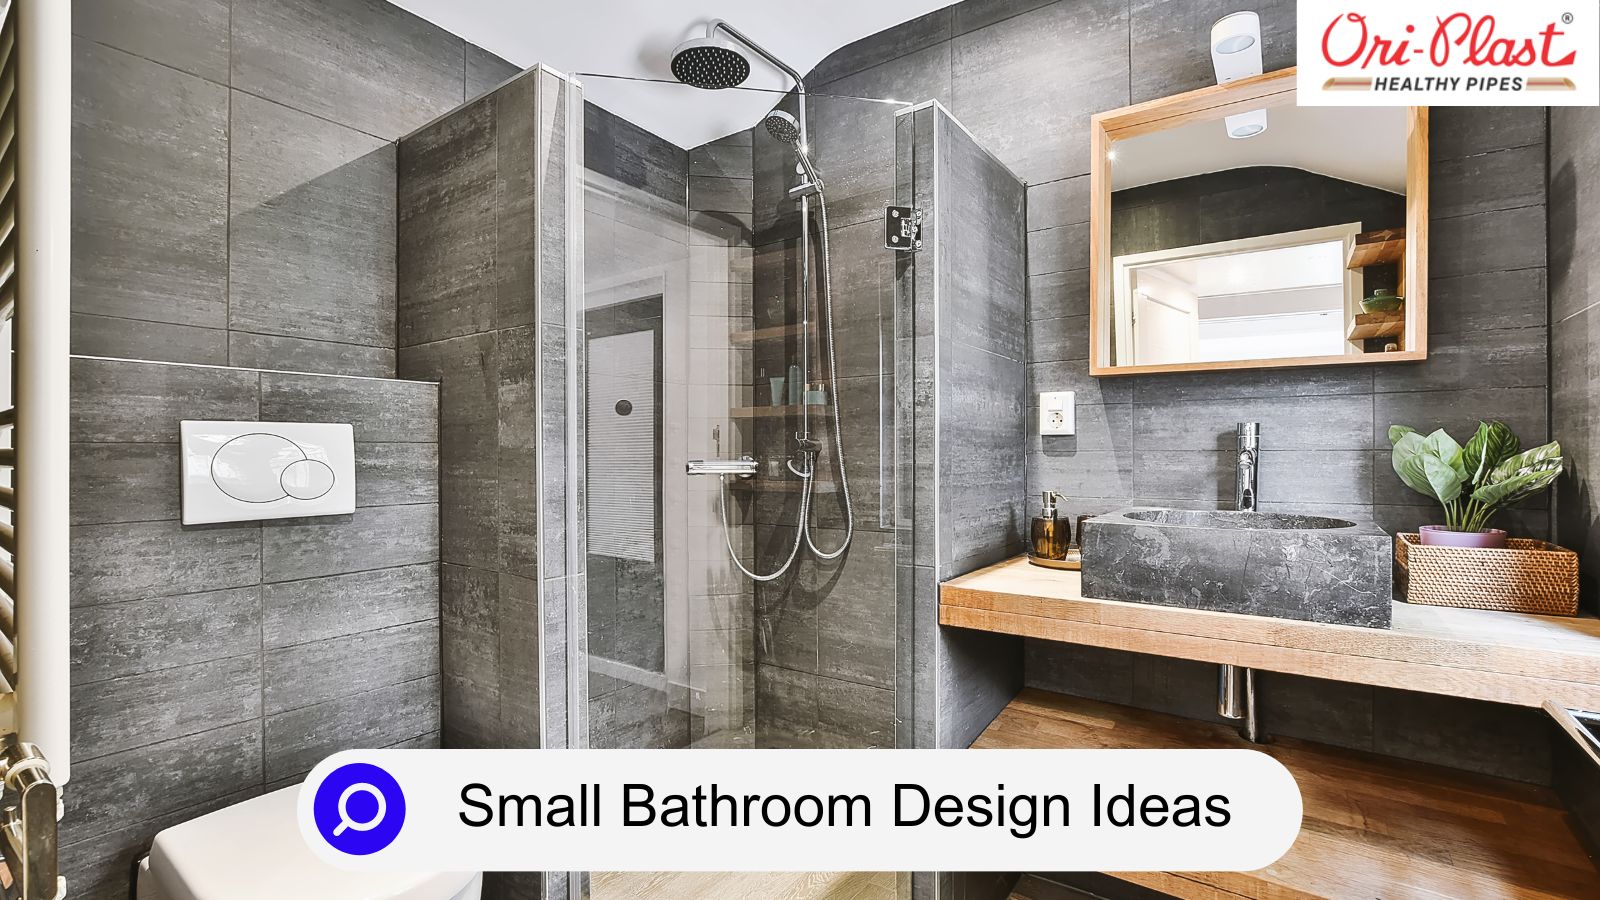 Oriplast bathroom Design Ideas